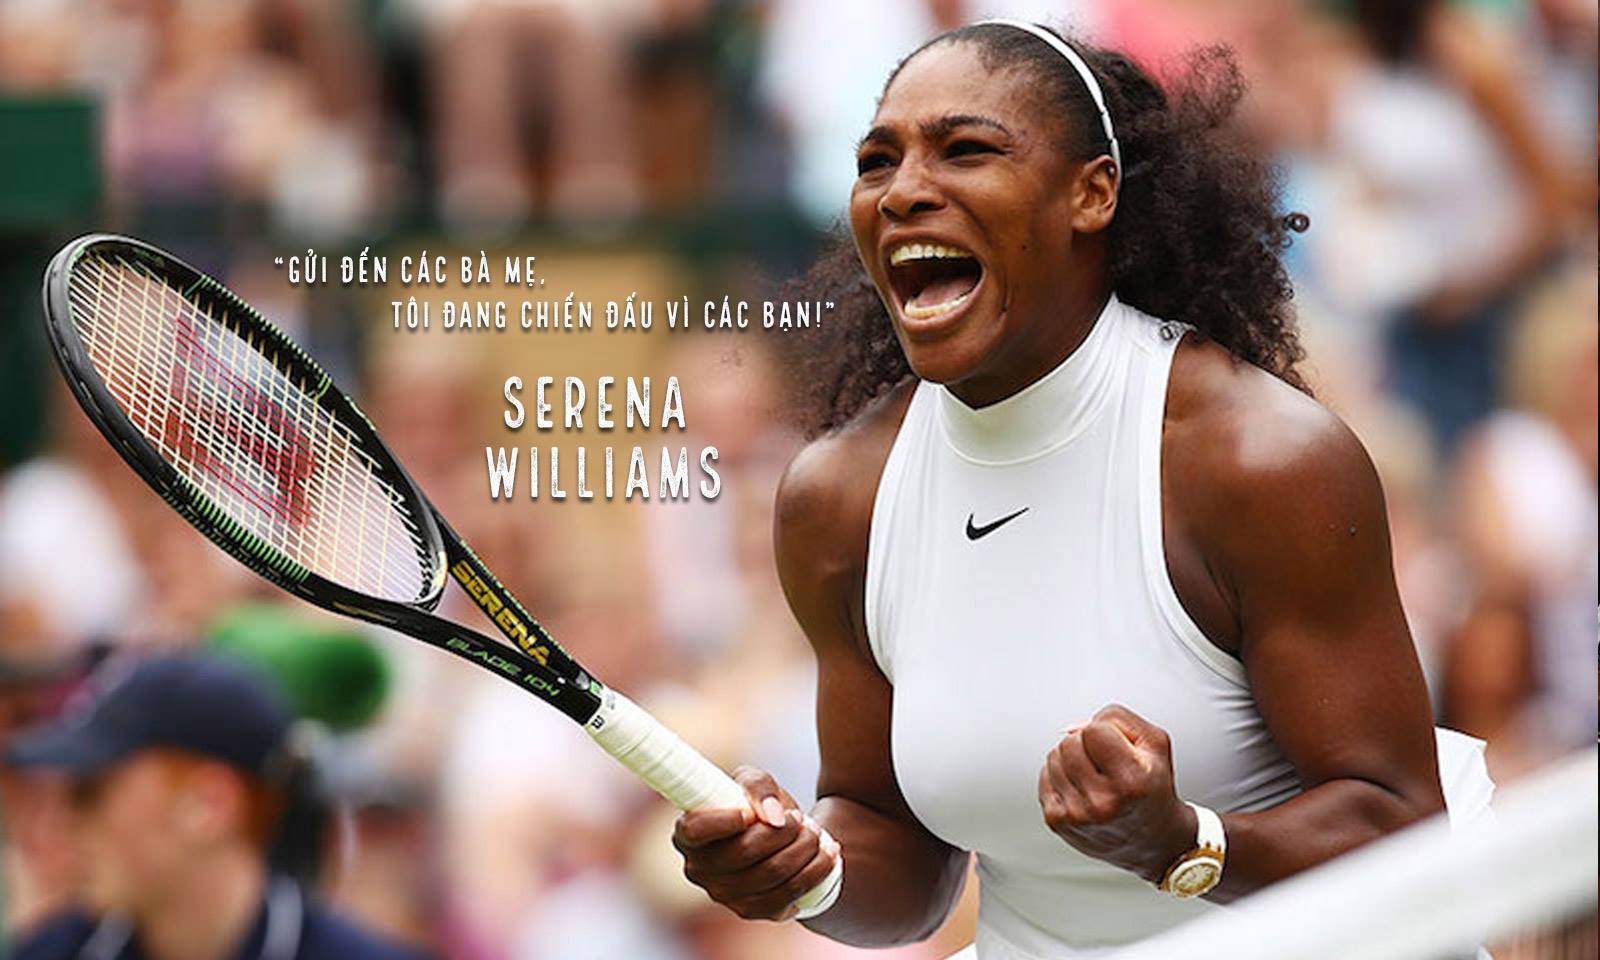 Tay vợt Serena Williams: “Gửi đến các bà mẹ, tôi đang chiến đấu vì các bạn!”